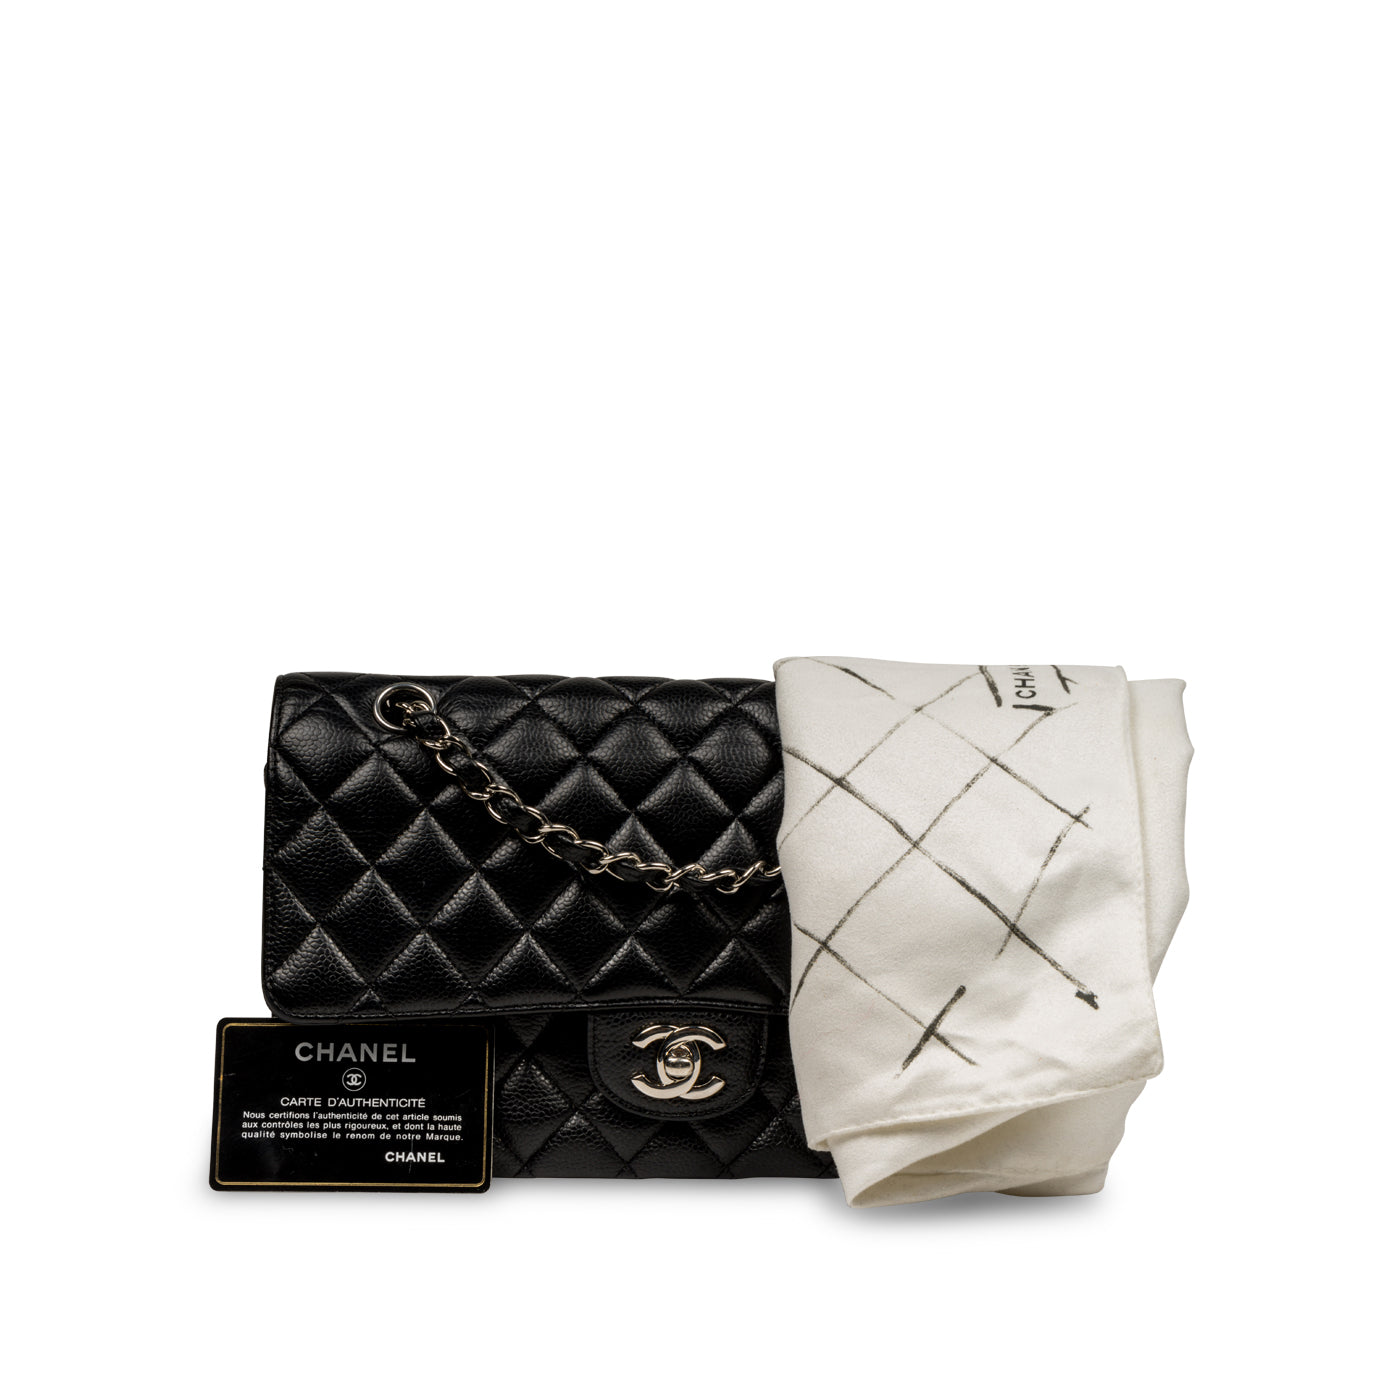 Chanel Delivery Black Medium Shoulder Bag - LAR Vintage